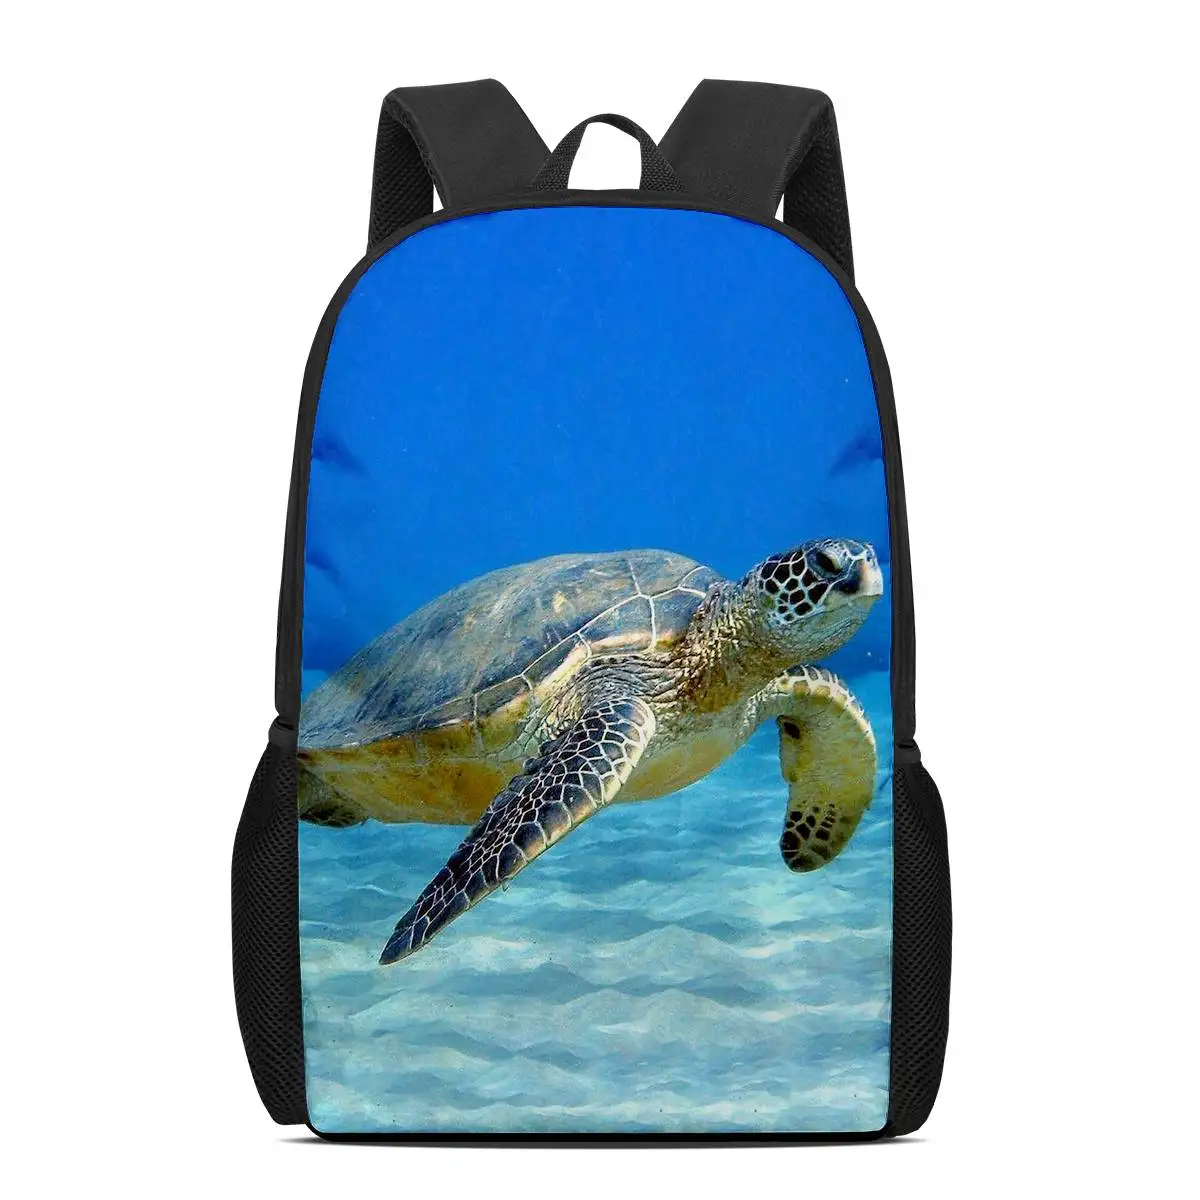 

Рюкзак для мальчиков и девочек, школьный ранец на плечо с 3D-принтом морской черепахи, дорожная сумка для книг для подростков, 16 дюймов